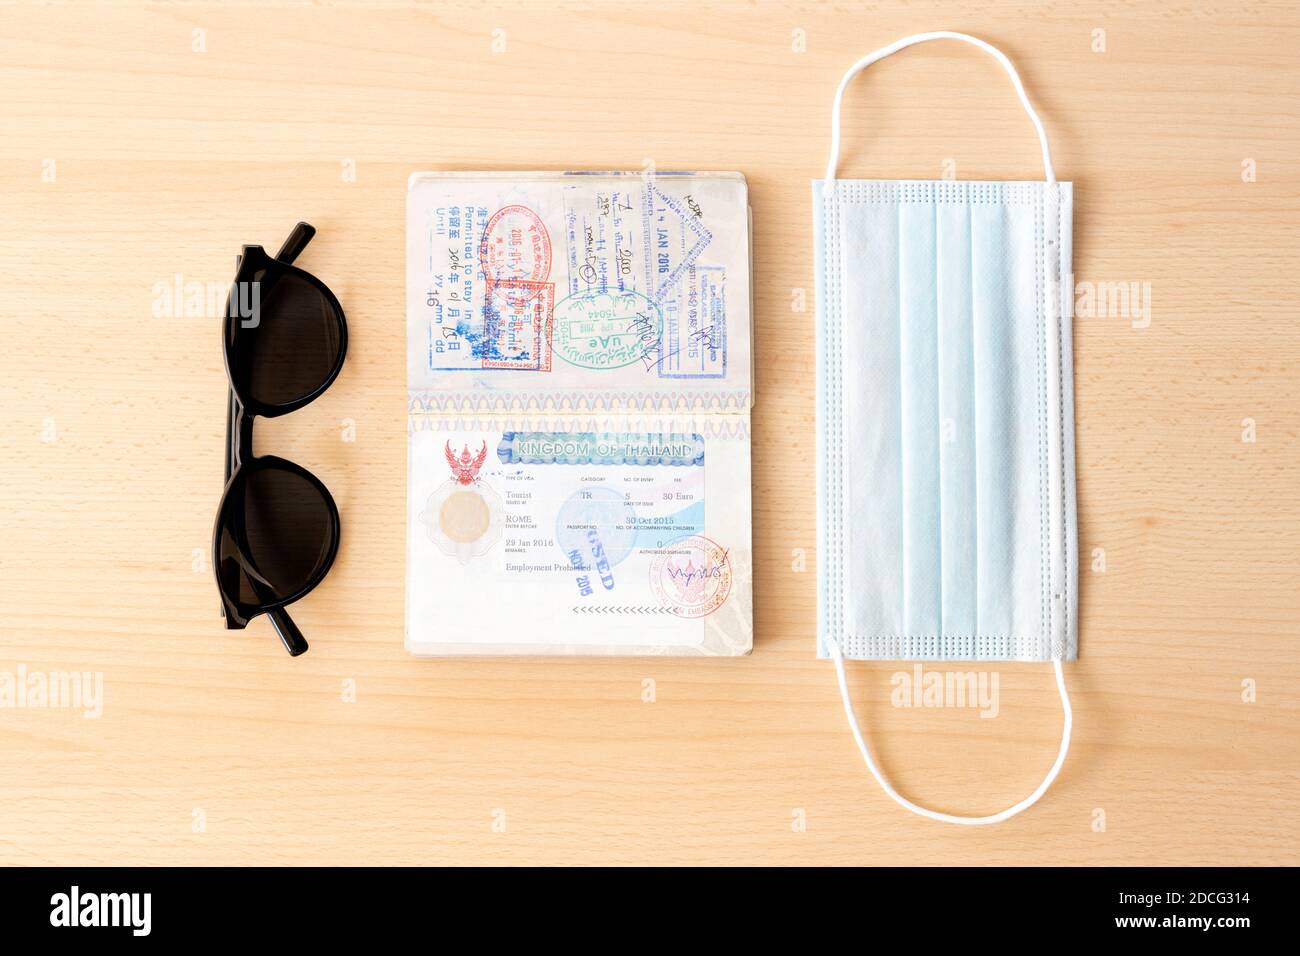 Sicheres Reisekonzept, Gesichtsmaske, Reisepass und Sonnenbrille sind auf einem Holztisch angeordnet. Stockfoto